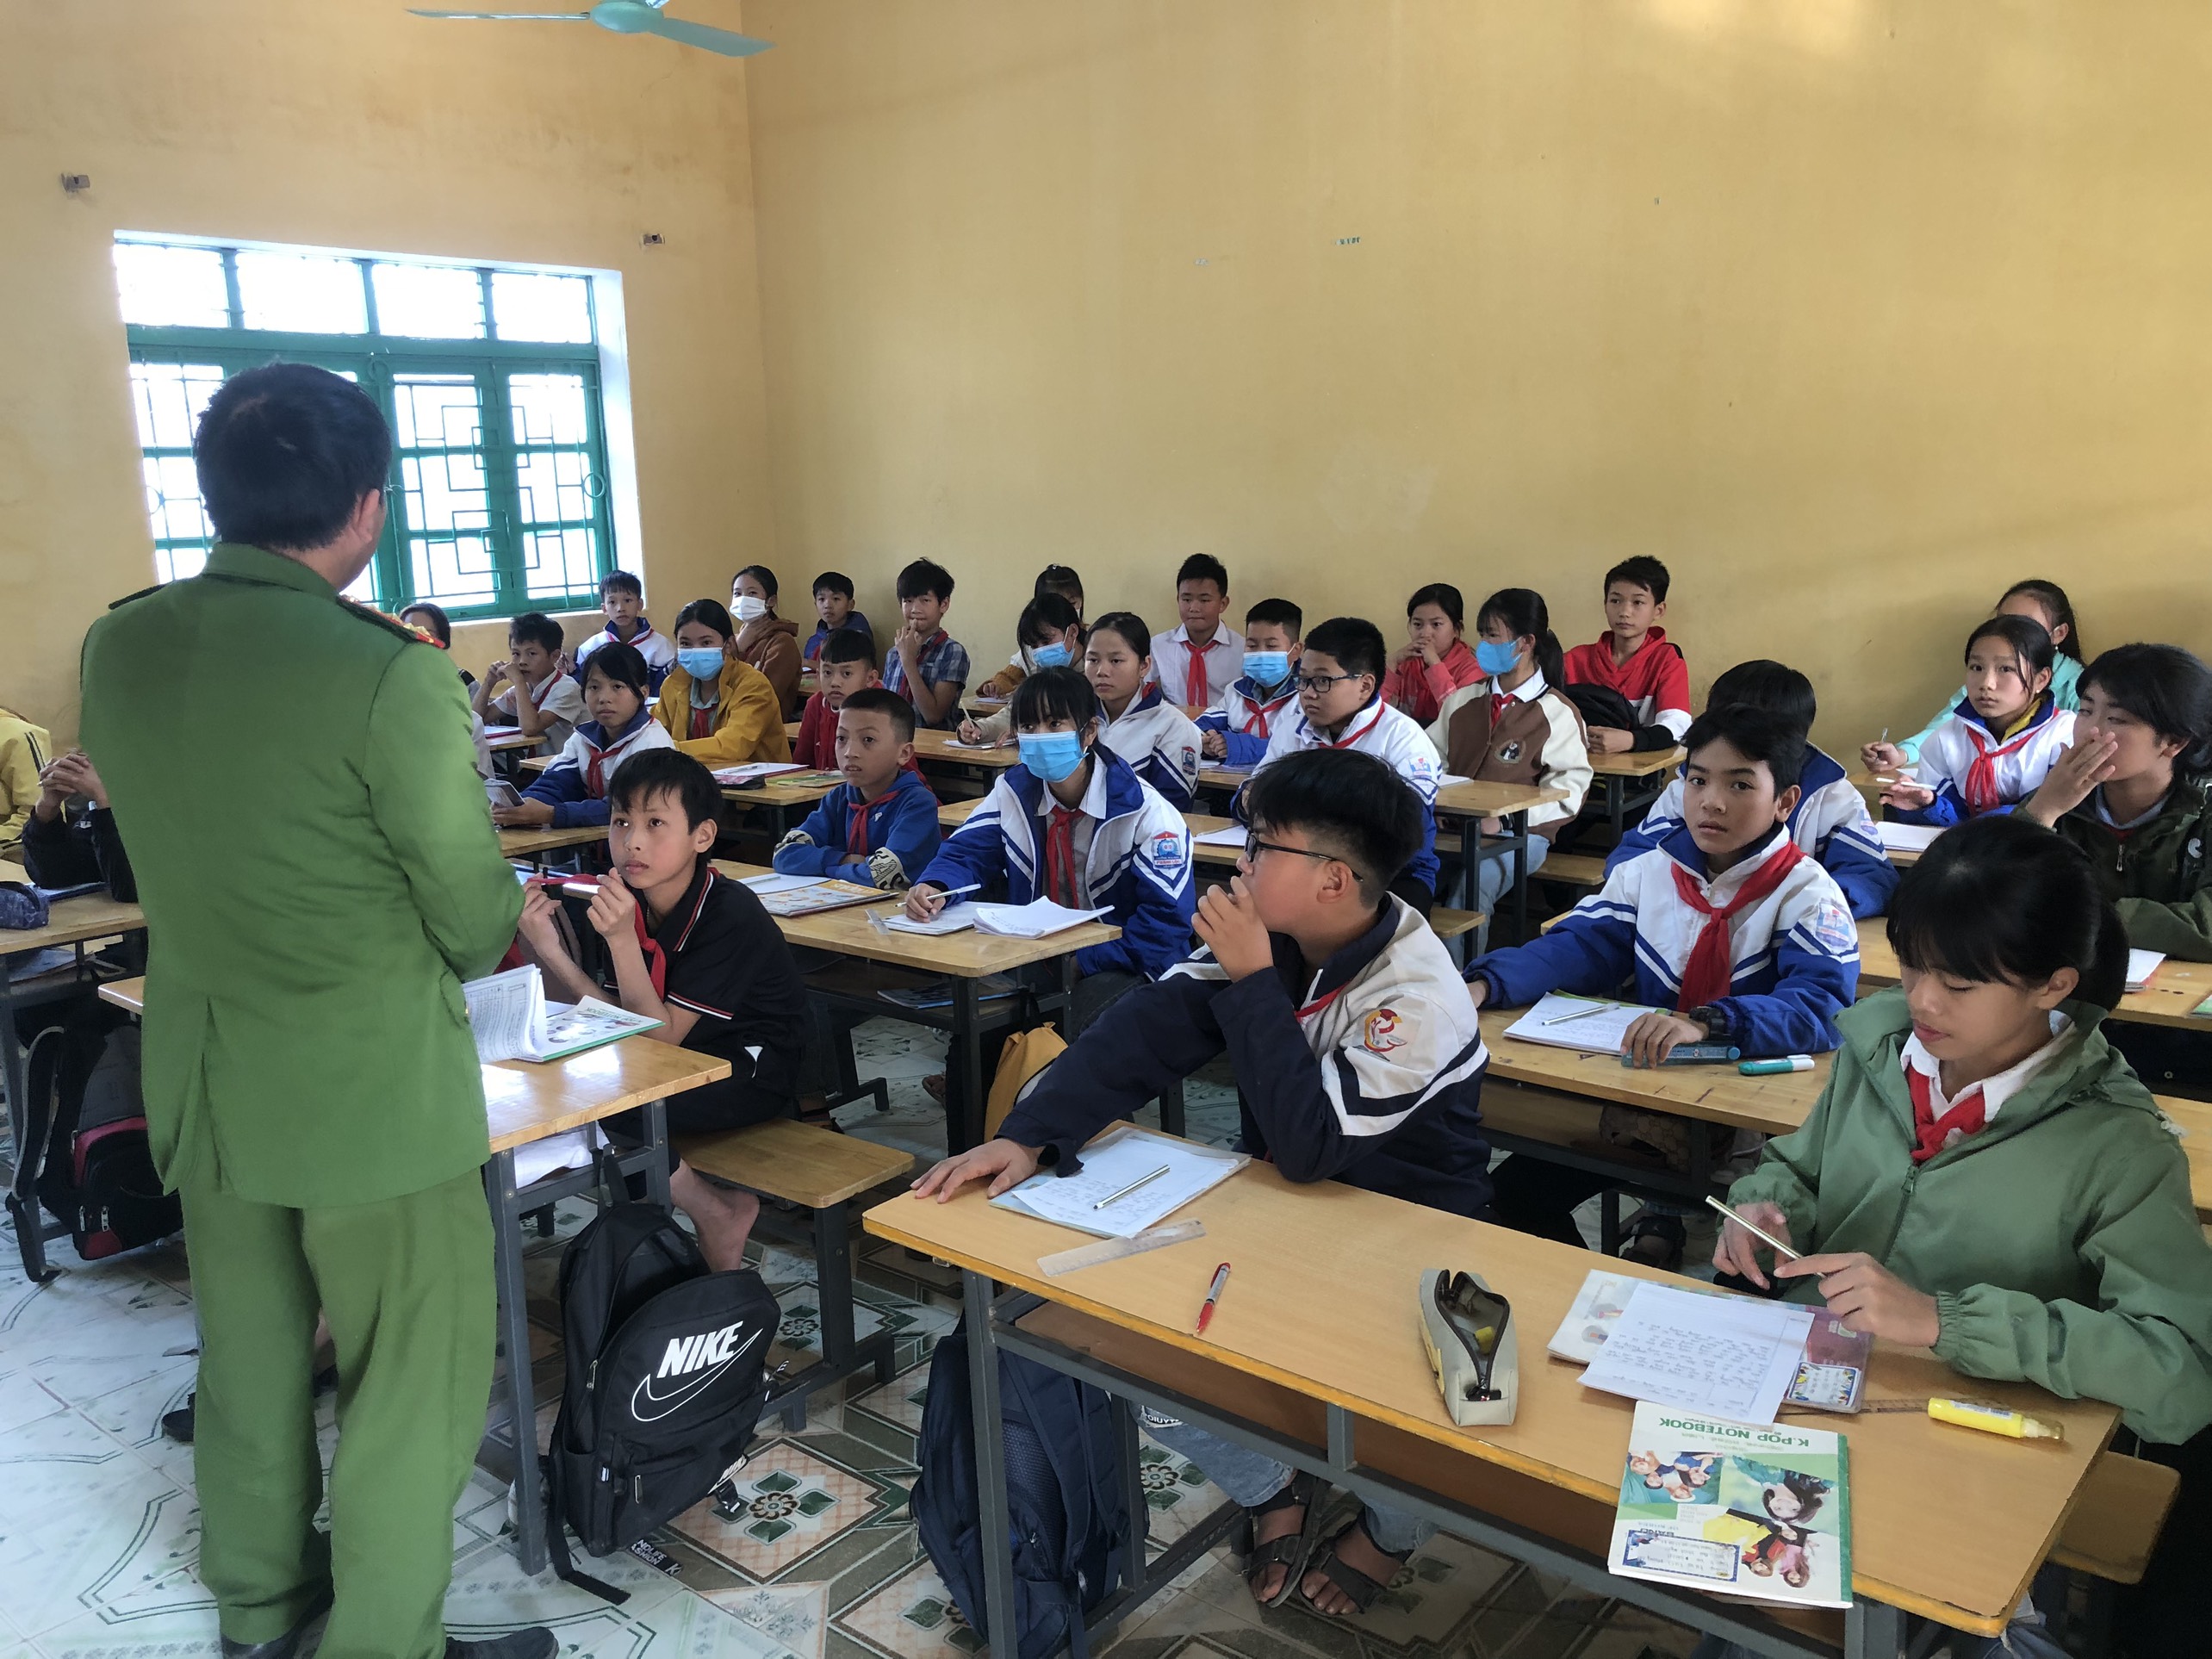 Ban công An xã Phong Lộc  Phối hợp tổ chức tuyên truyền, triển khai ký cam kết không mua bán tàng trữ, sử dụng vật liệu Pháo nổ tại các trường học trên địa bàn 